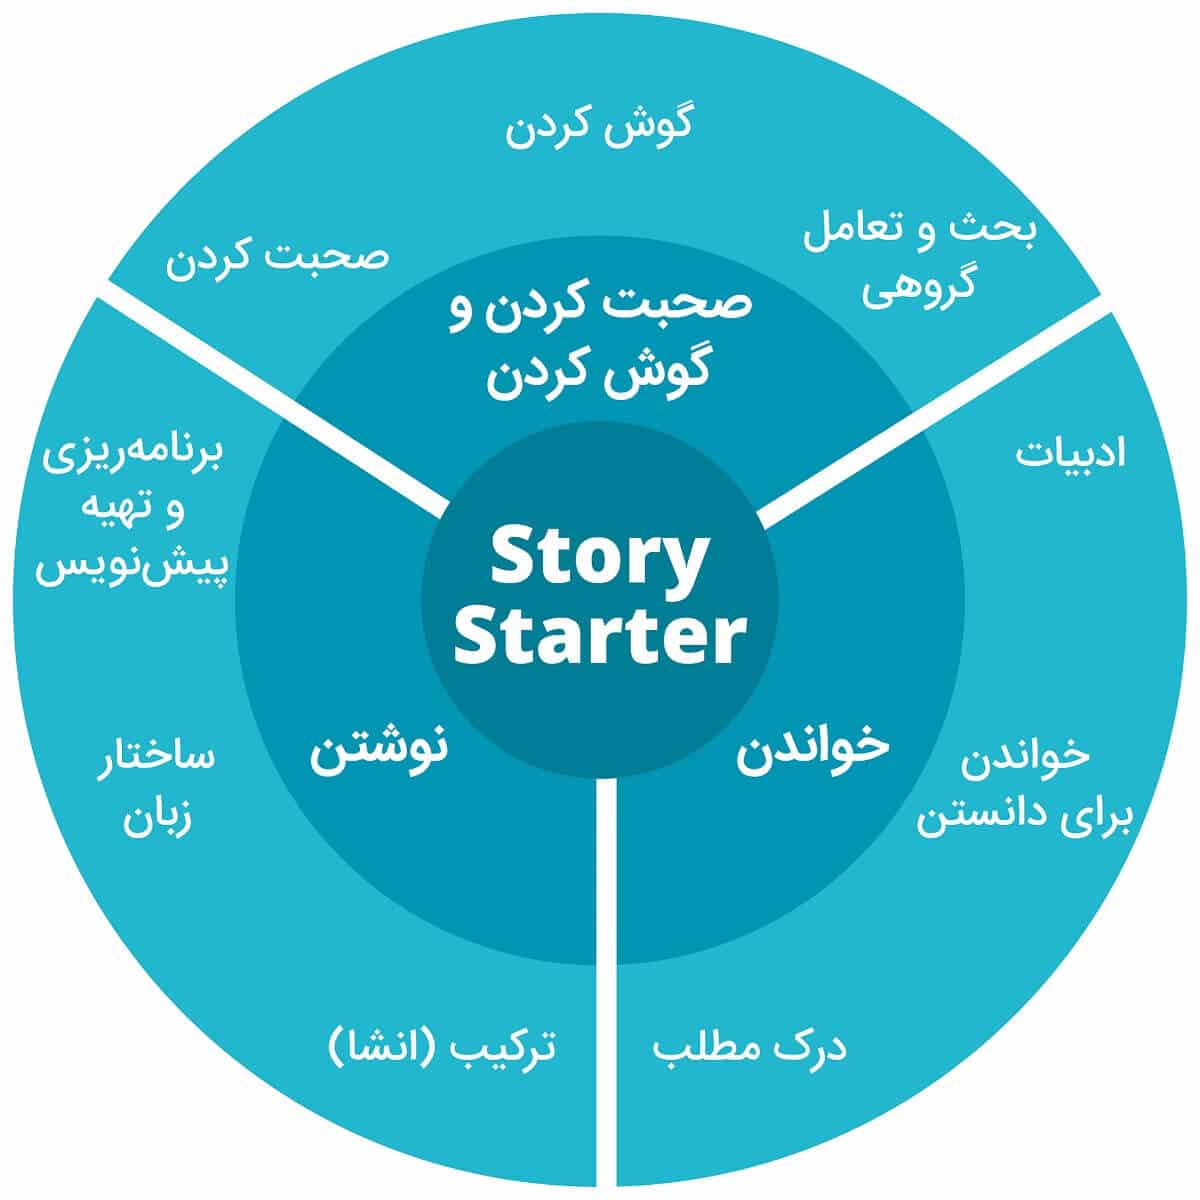 اهداف دوره Story Starter